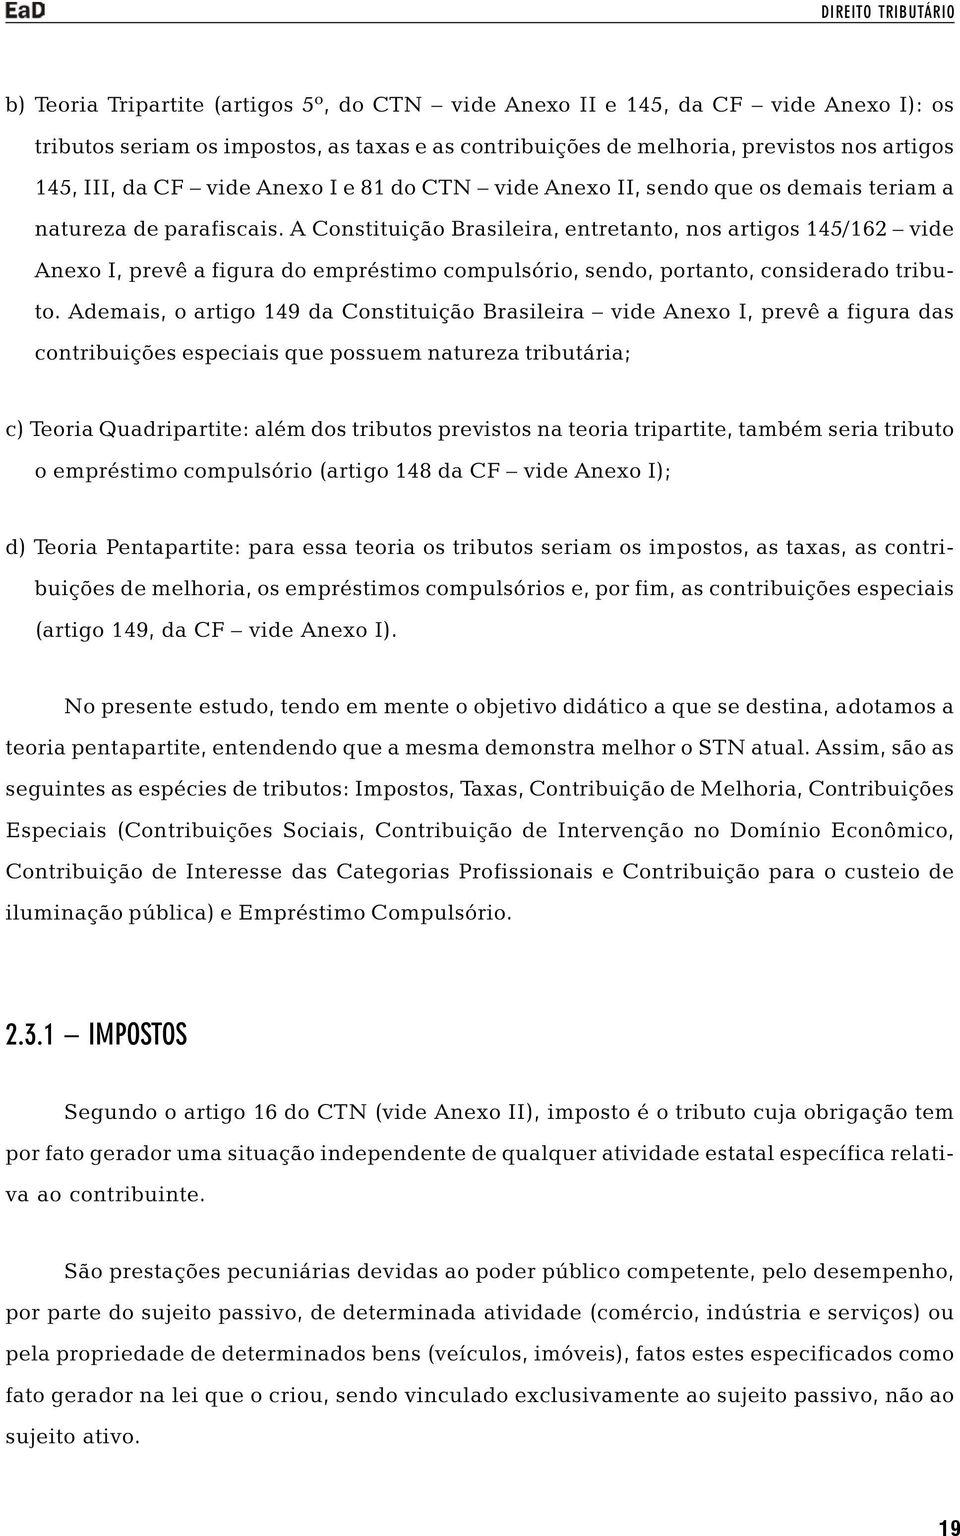 A Constituição Brasileira, entretanto, nos artigos 145/162 vide Anexo I, prevê a figura do empréstimo compulsório, sendo, portanto, considerado tributo.